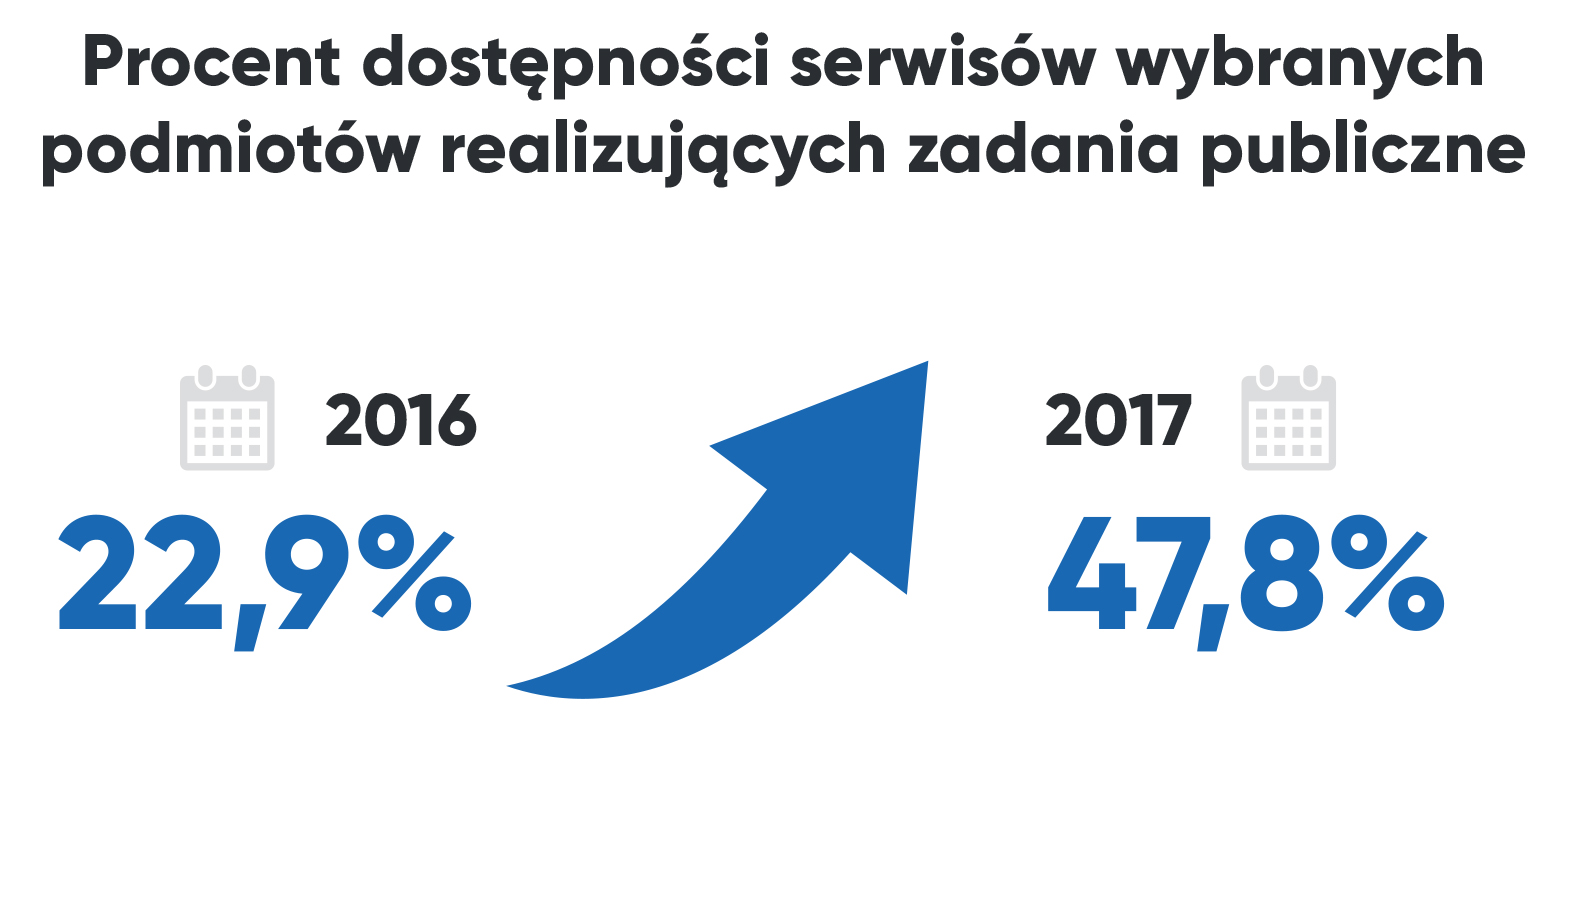 Procent dostępności serwisów wybranych podmiotów realizujących zadania publiczne w 2016 - 22,9% i 2017 roku 47,8